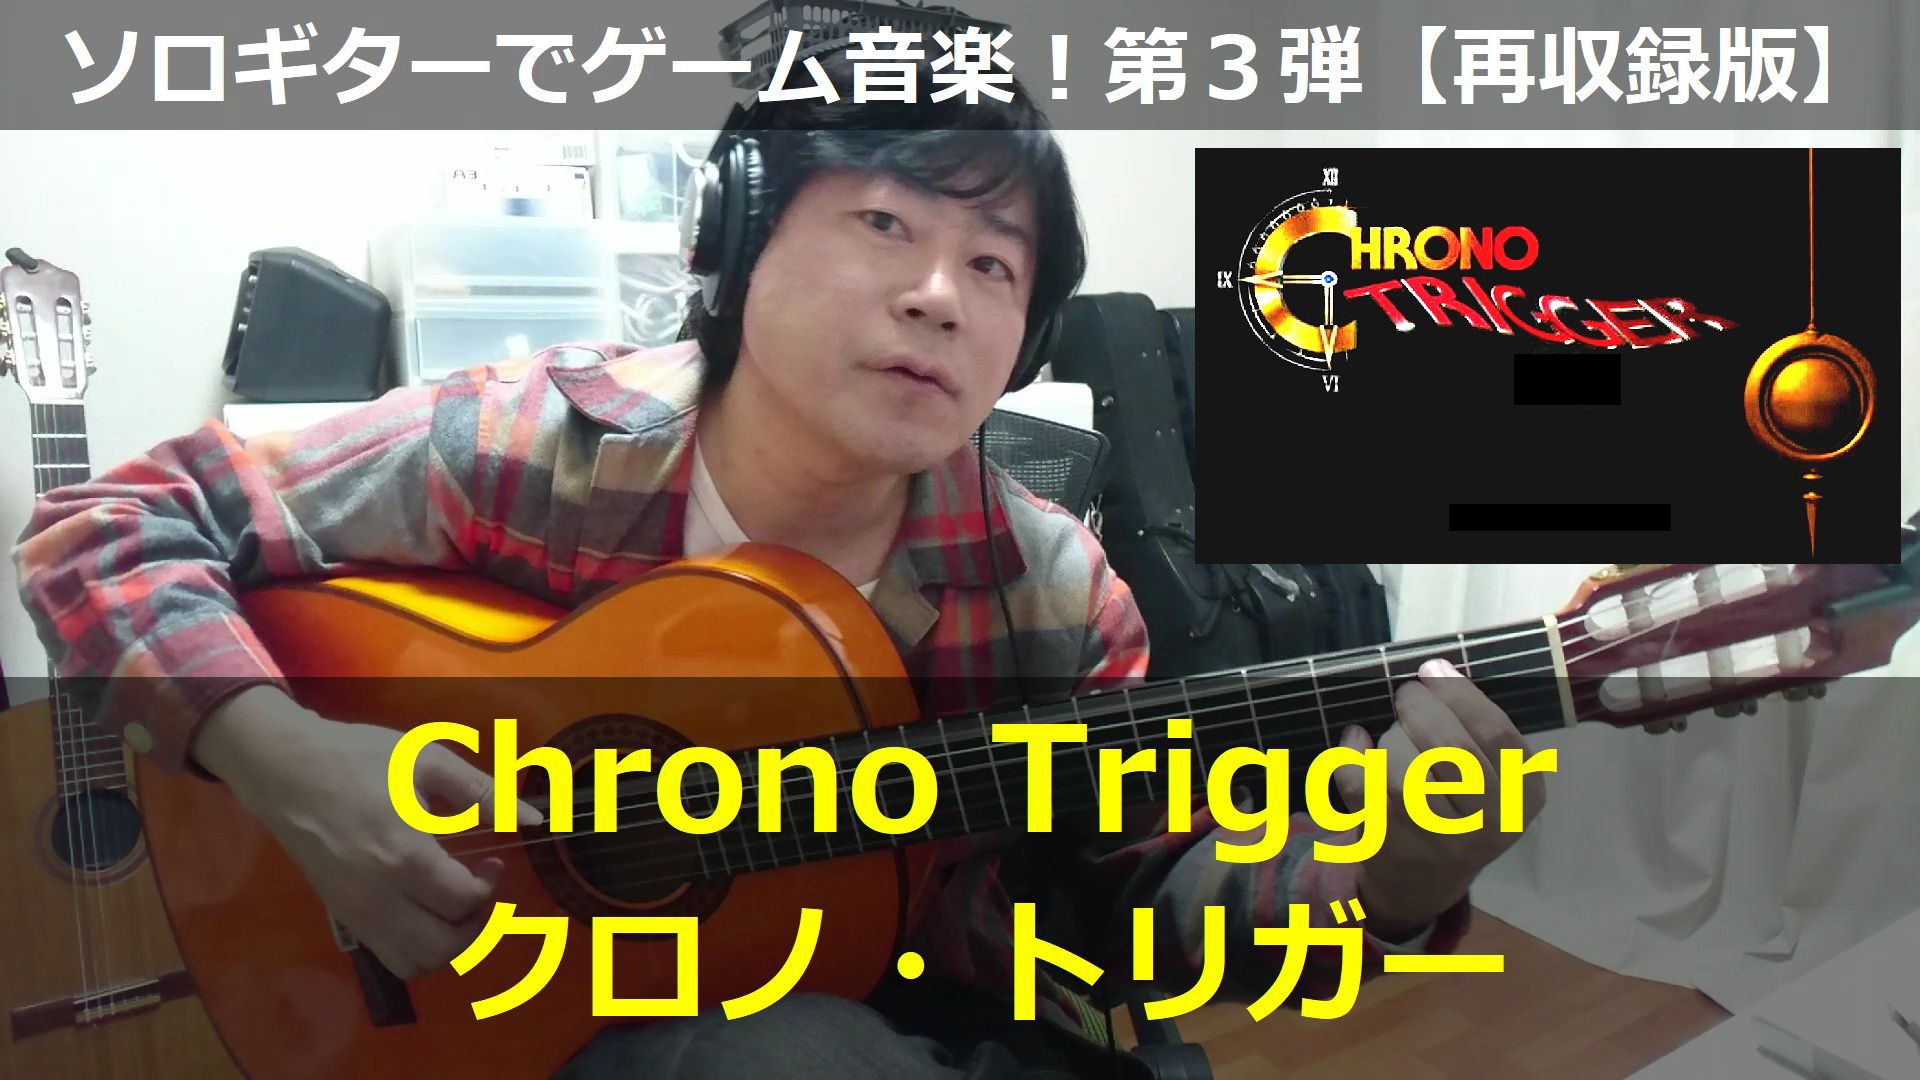 クロノトリガー Chrono Trigger